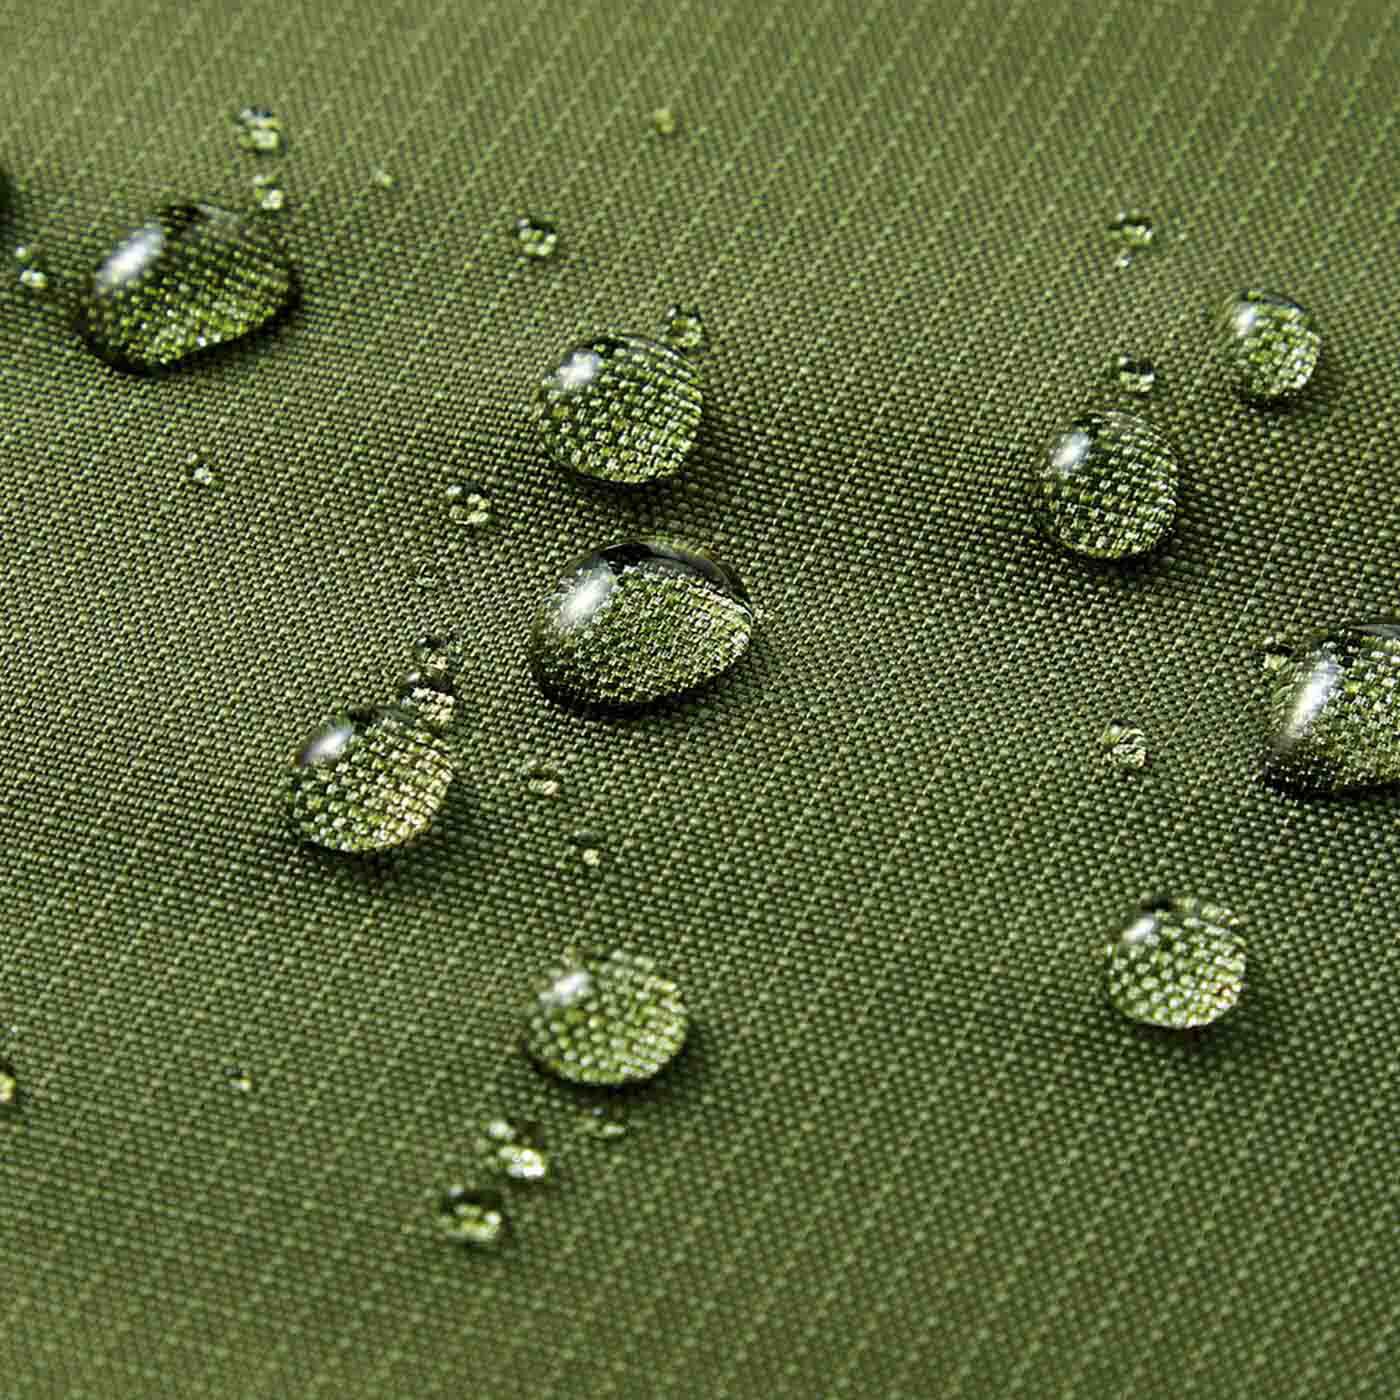 フェリシモの雑貨Kraso|レジカゴにフィット ファスナーで目隠しできる ジャンボなマイバッグ〈モチーフ・撥水（はっすい）〉の会|撥水加工素材なので、水滴がサッとはらえます。